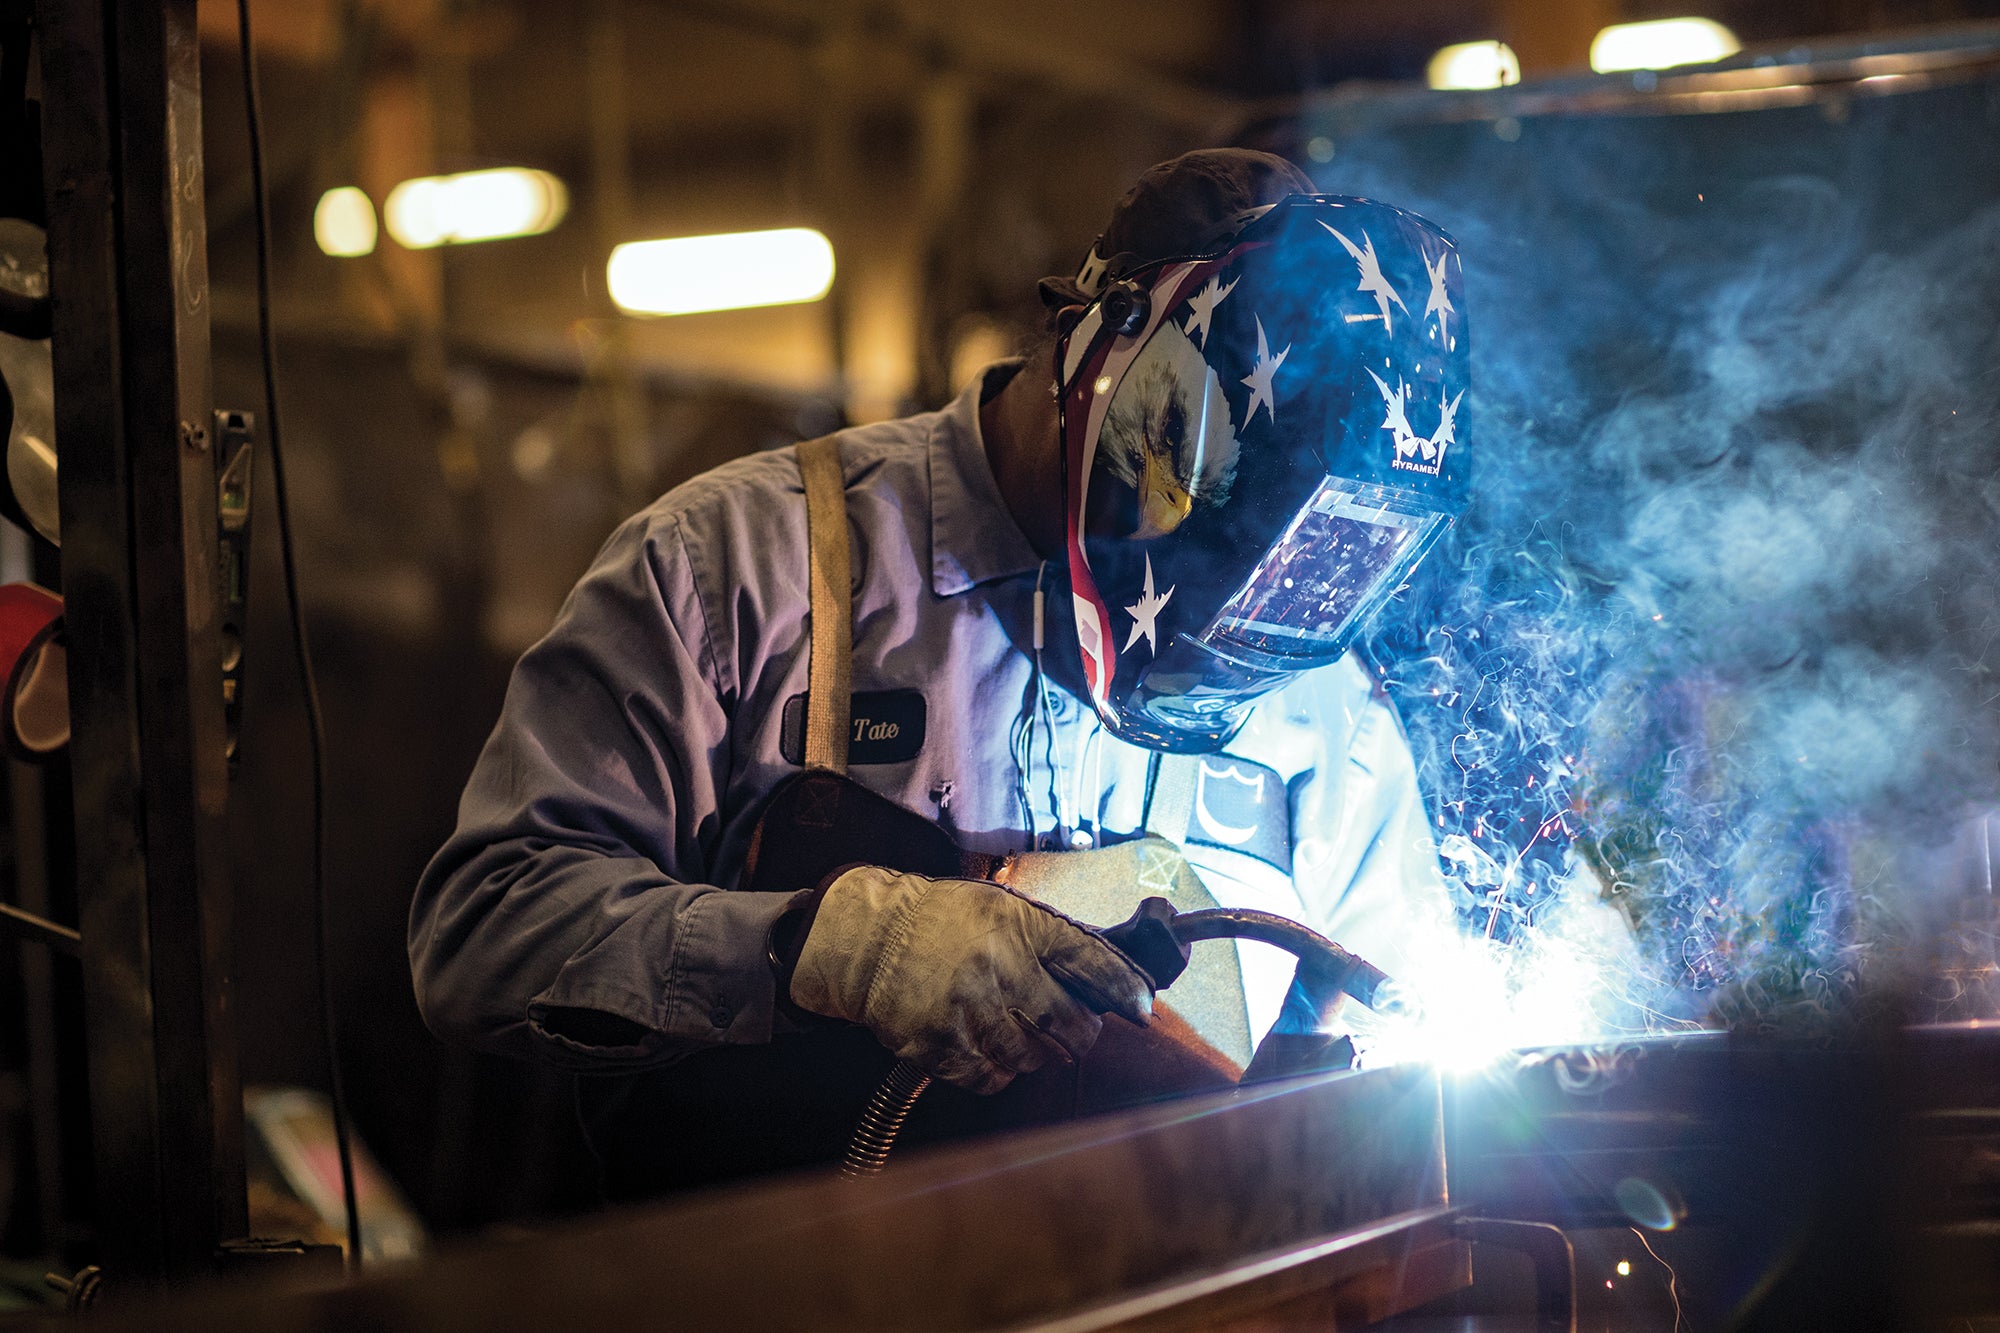 Man welding while using a Pyramex auto darkening welding helmet.